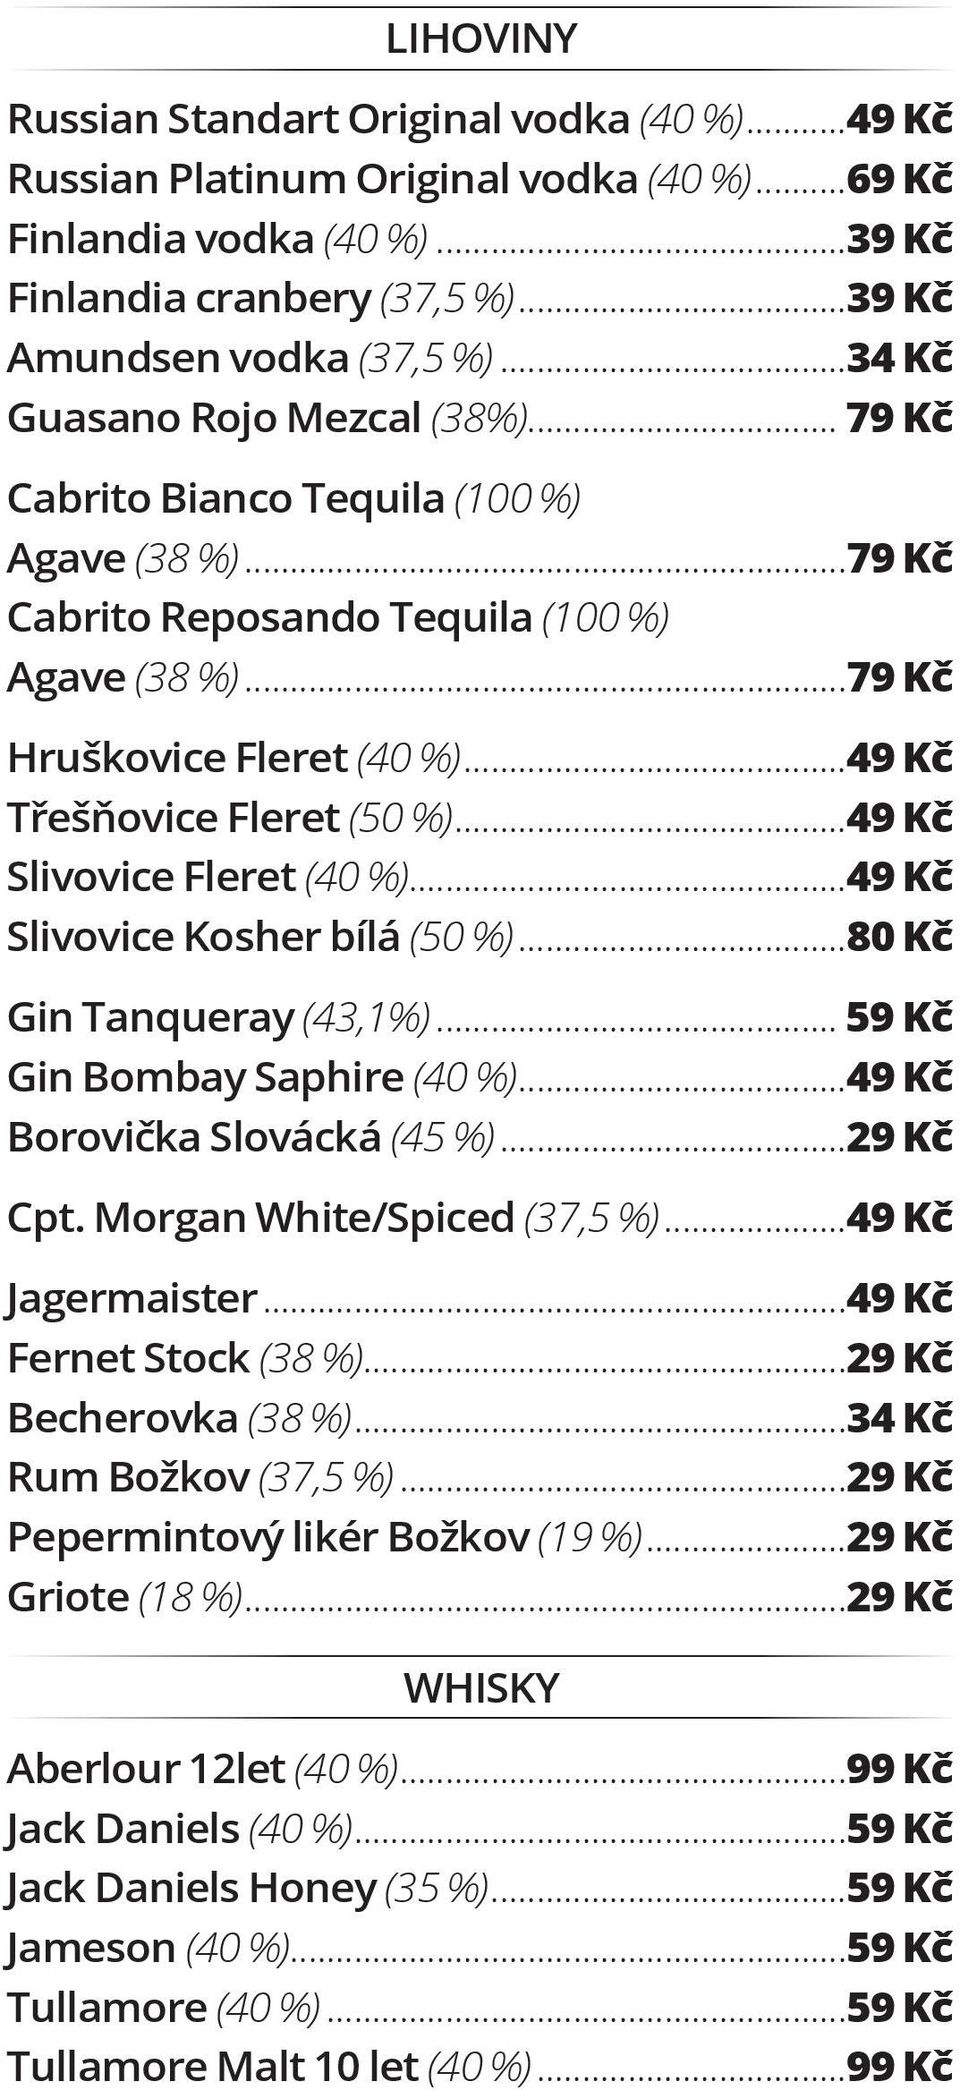 ..49 Kč Třešňovice Fleret (50 %)...49 Kč Slivovice Fleret (40 %)...49 Kč Slivovice Kosher bílá (50 %)...80 Kč Gin Tanqueray (43,1%)... 59 Kč Gin Bombay Saphire (40 %)...49 Kč Borovička Slovácká (45 %).